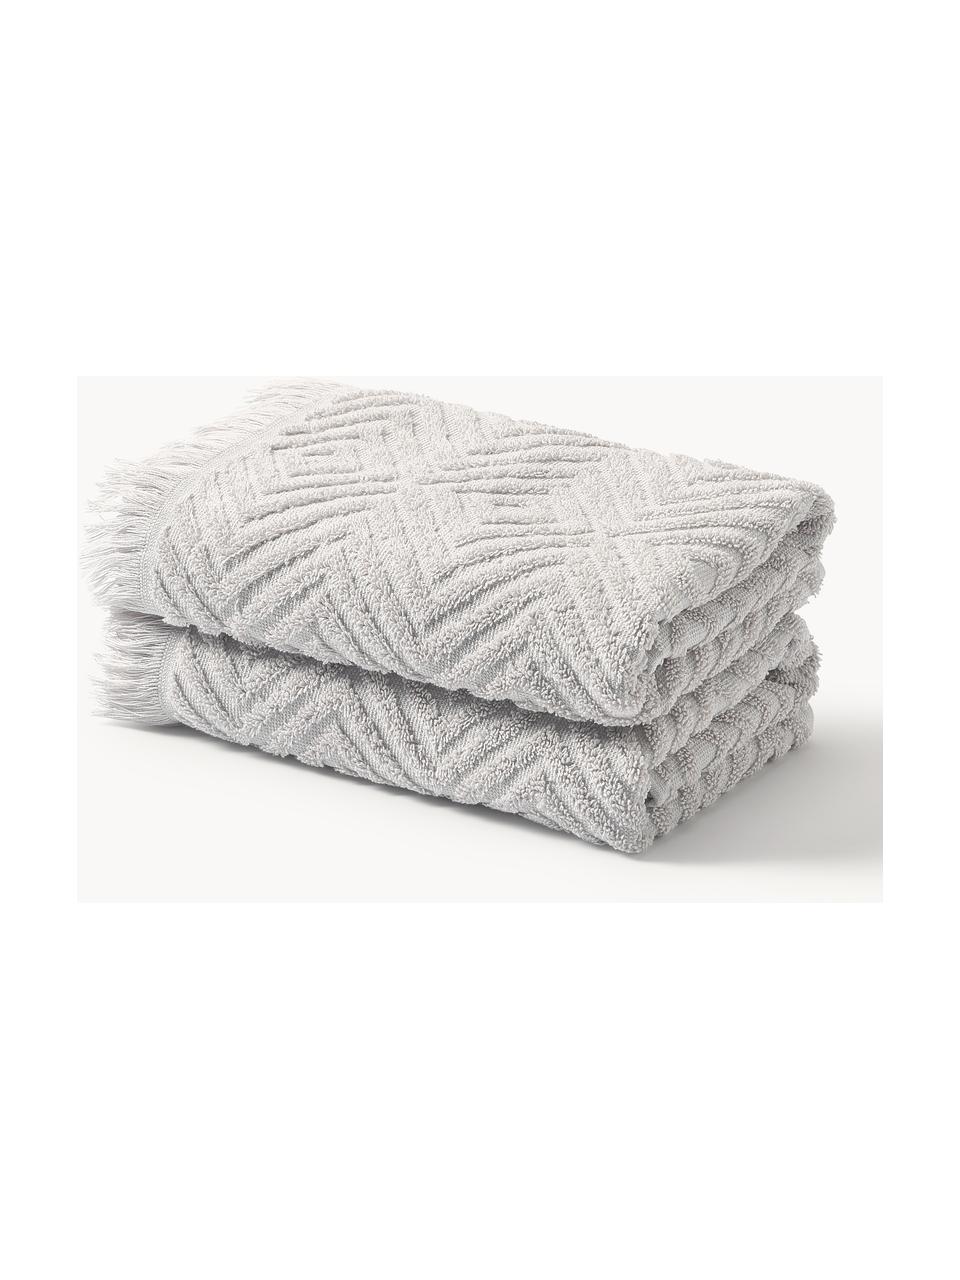 Handdoek Jacqui in verschillende formaten, met hoog-laag patroon, Lichtgrijs, Handdoek, B 50 x L 100 cm, 2 stuks